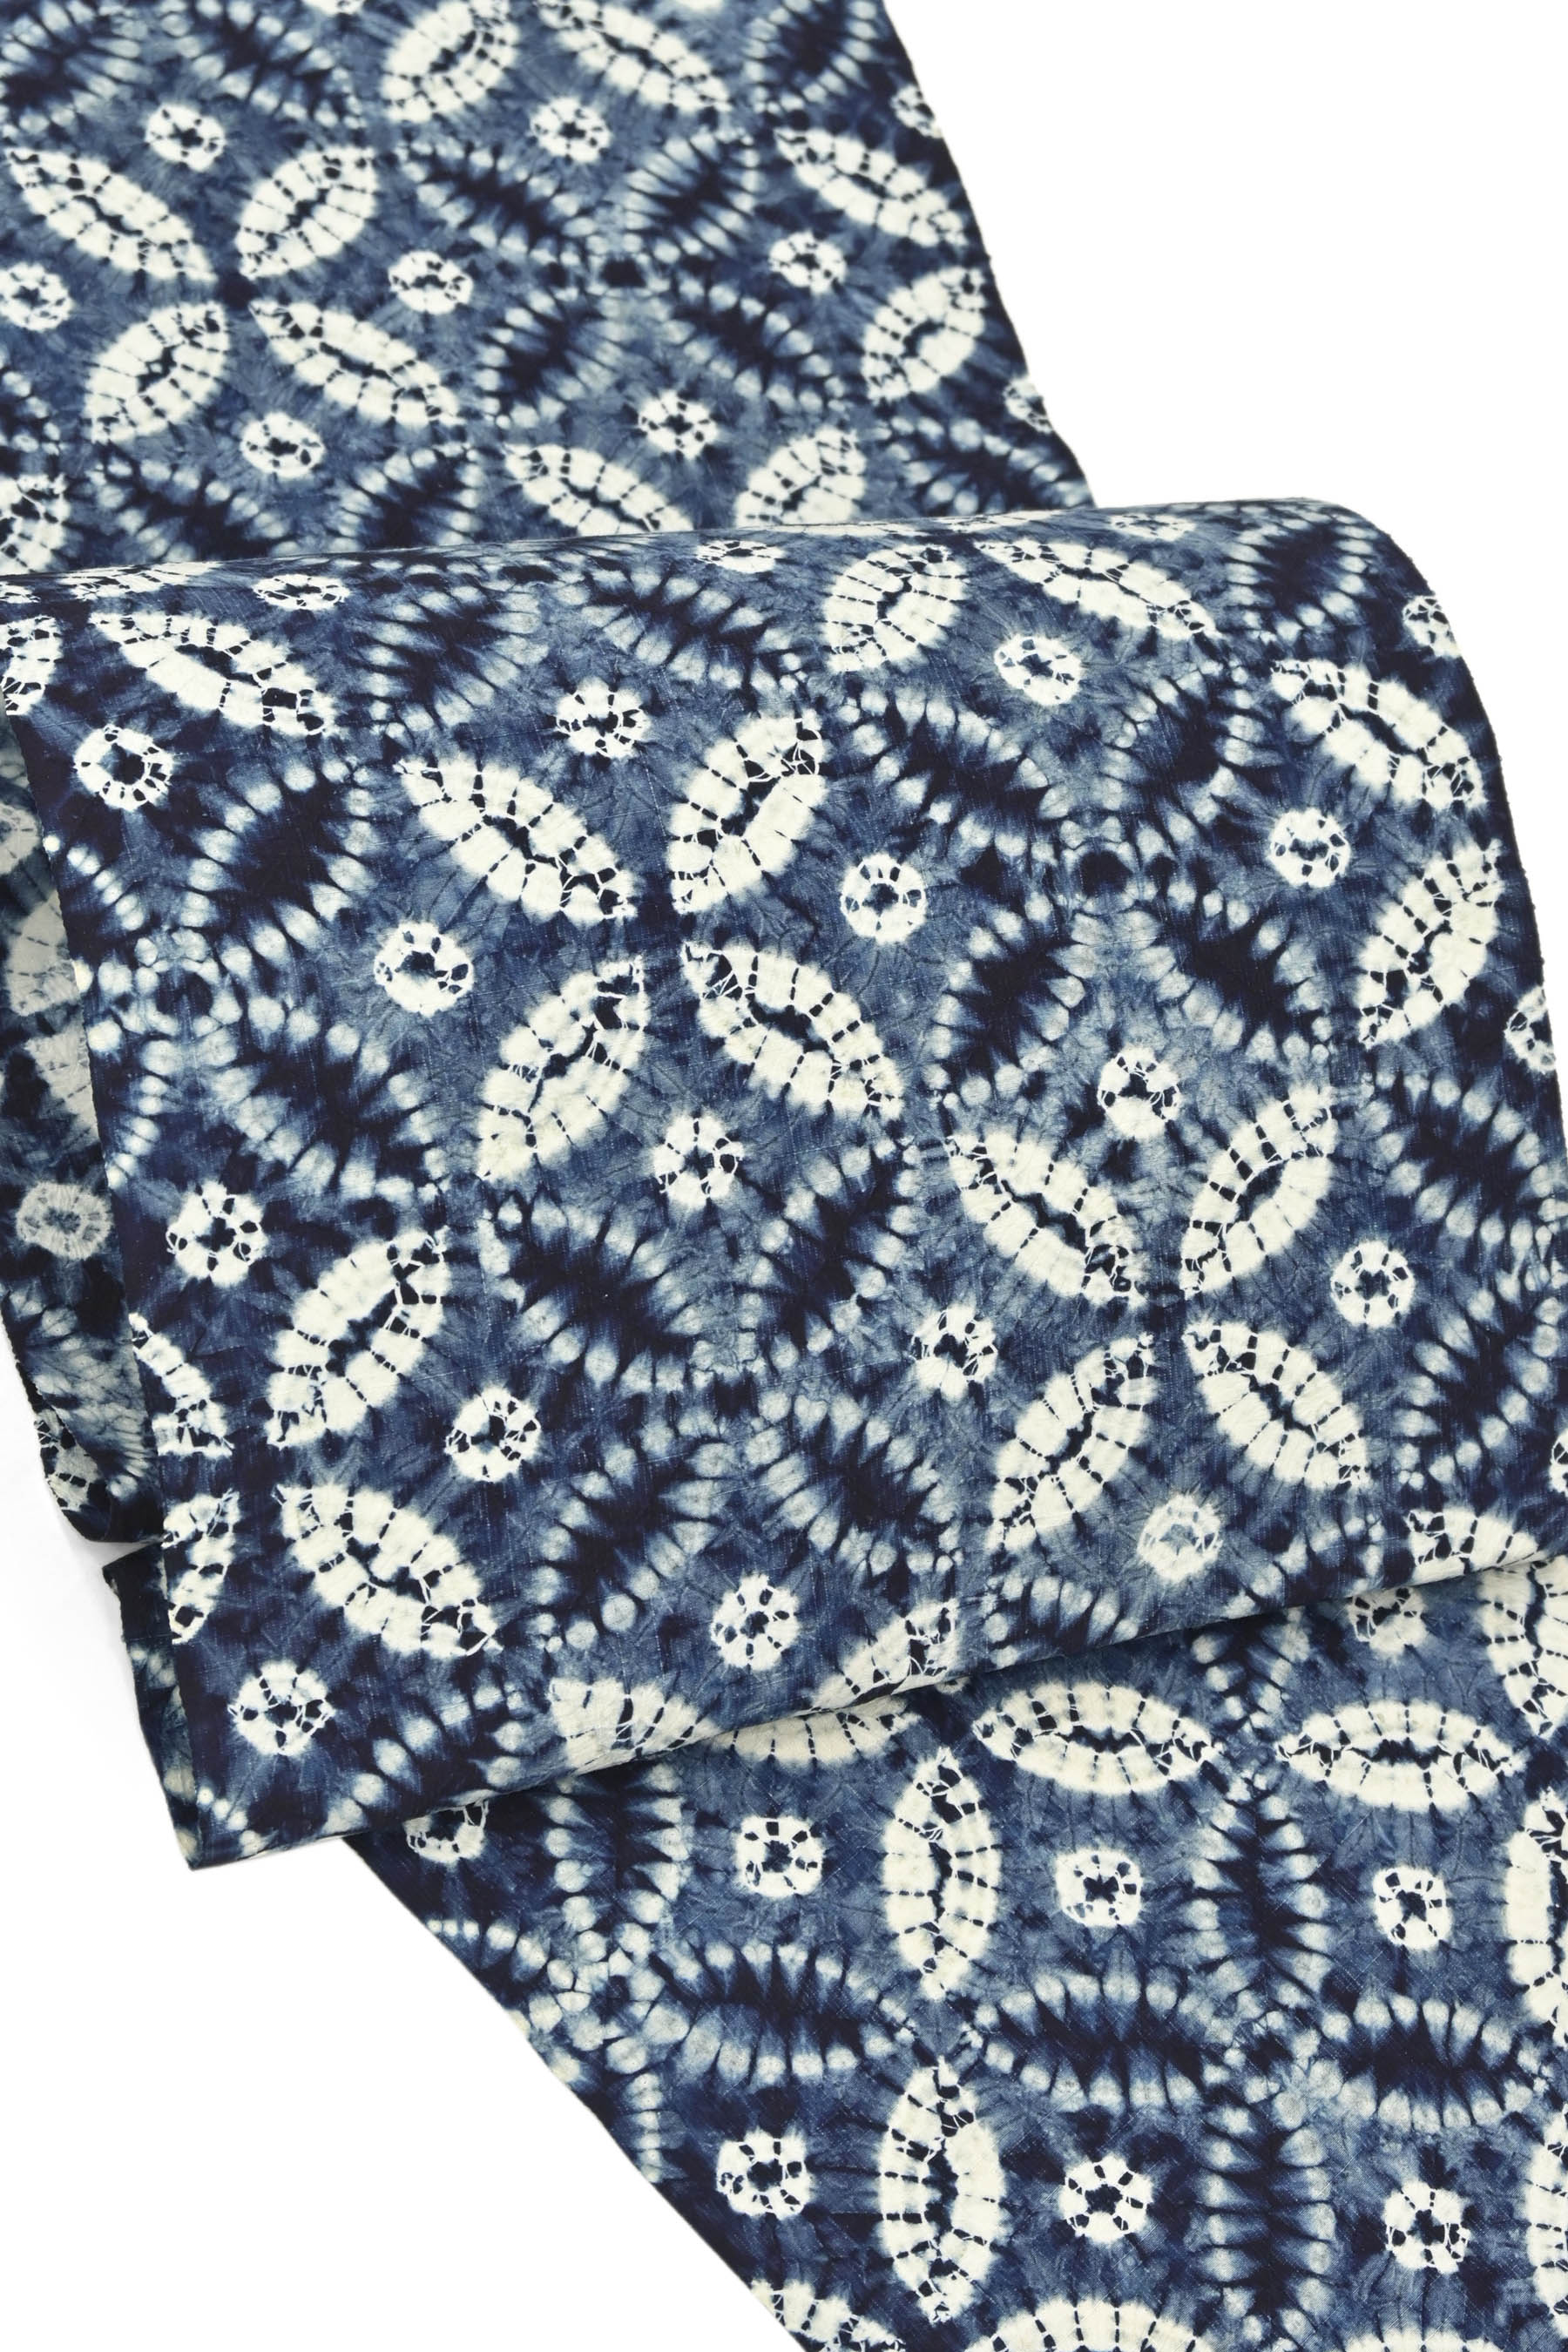 新品 天然灰汁発酵建藍染 着物 “藍の伝説” 正絹 作家物 袋帯 2439